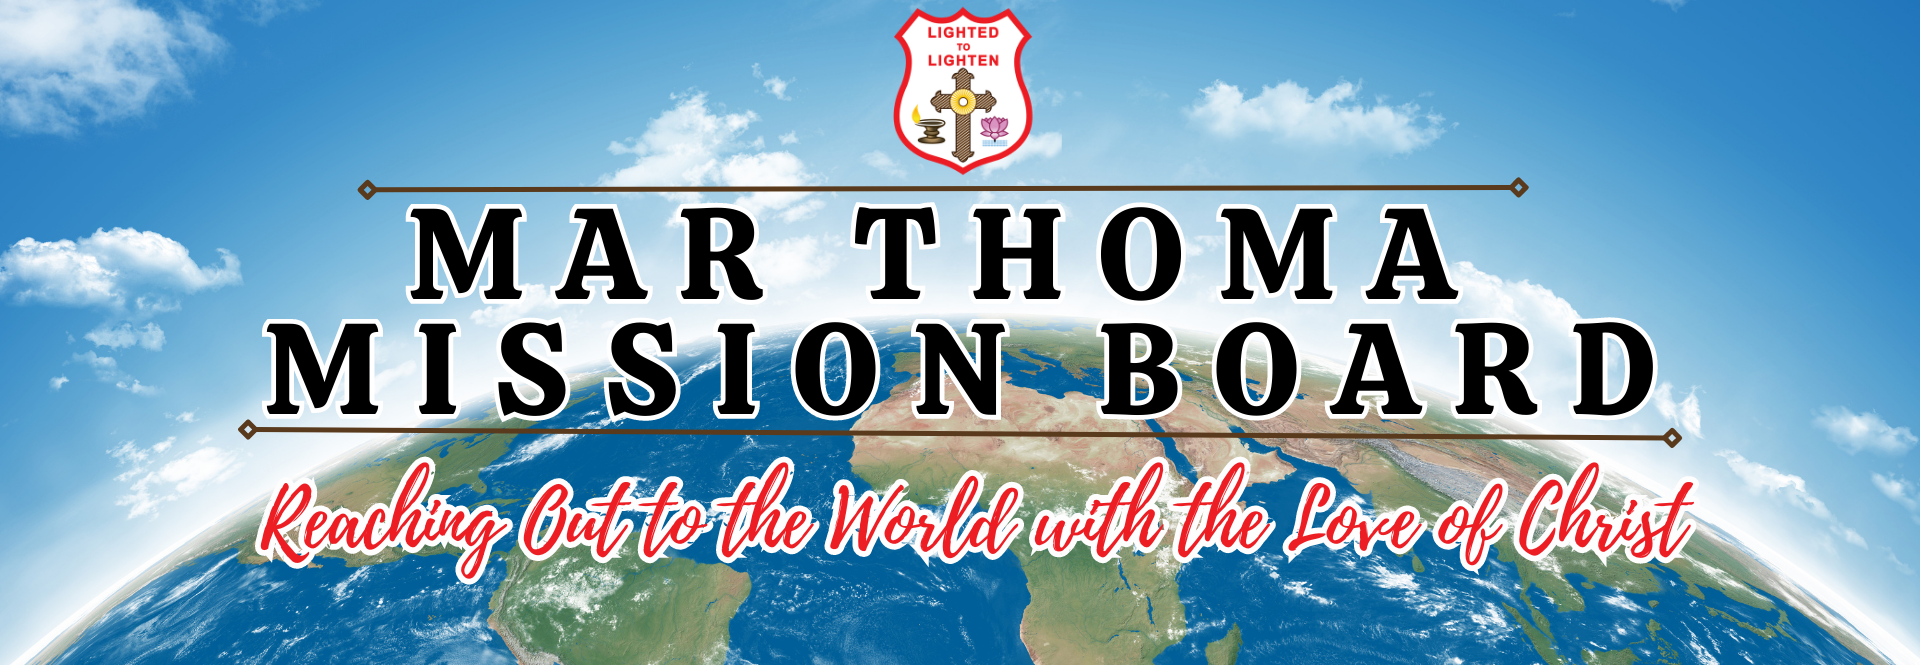 Mar Thoma Mission Board